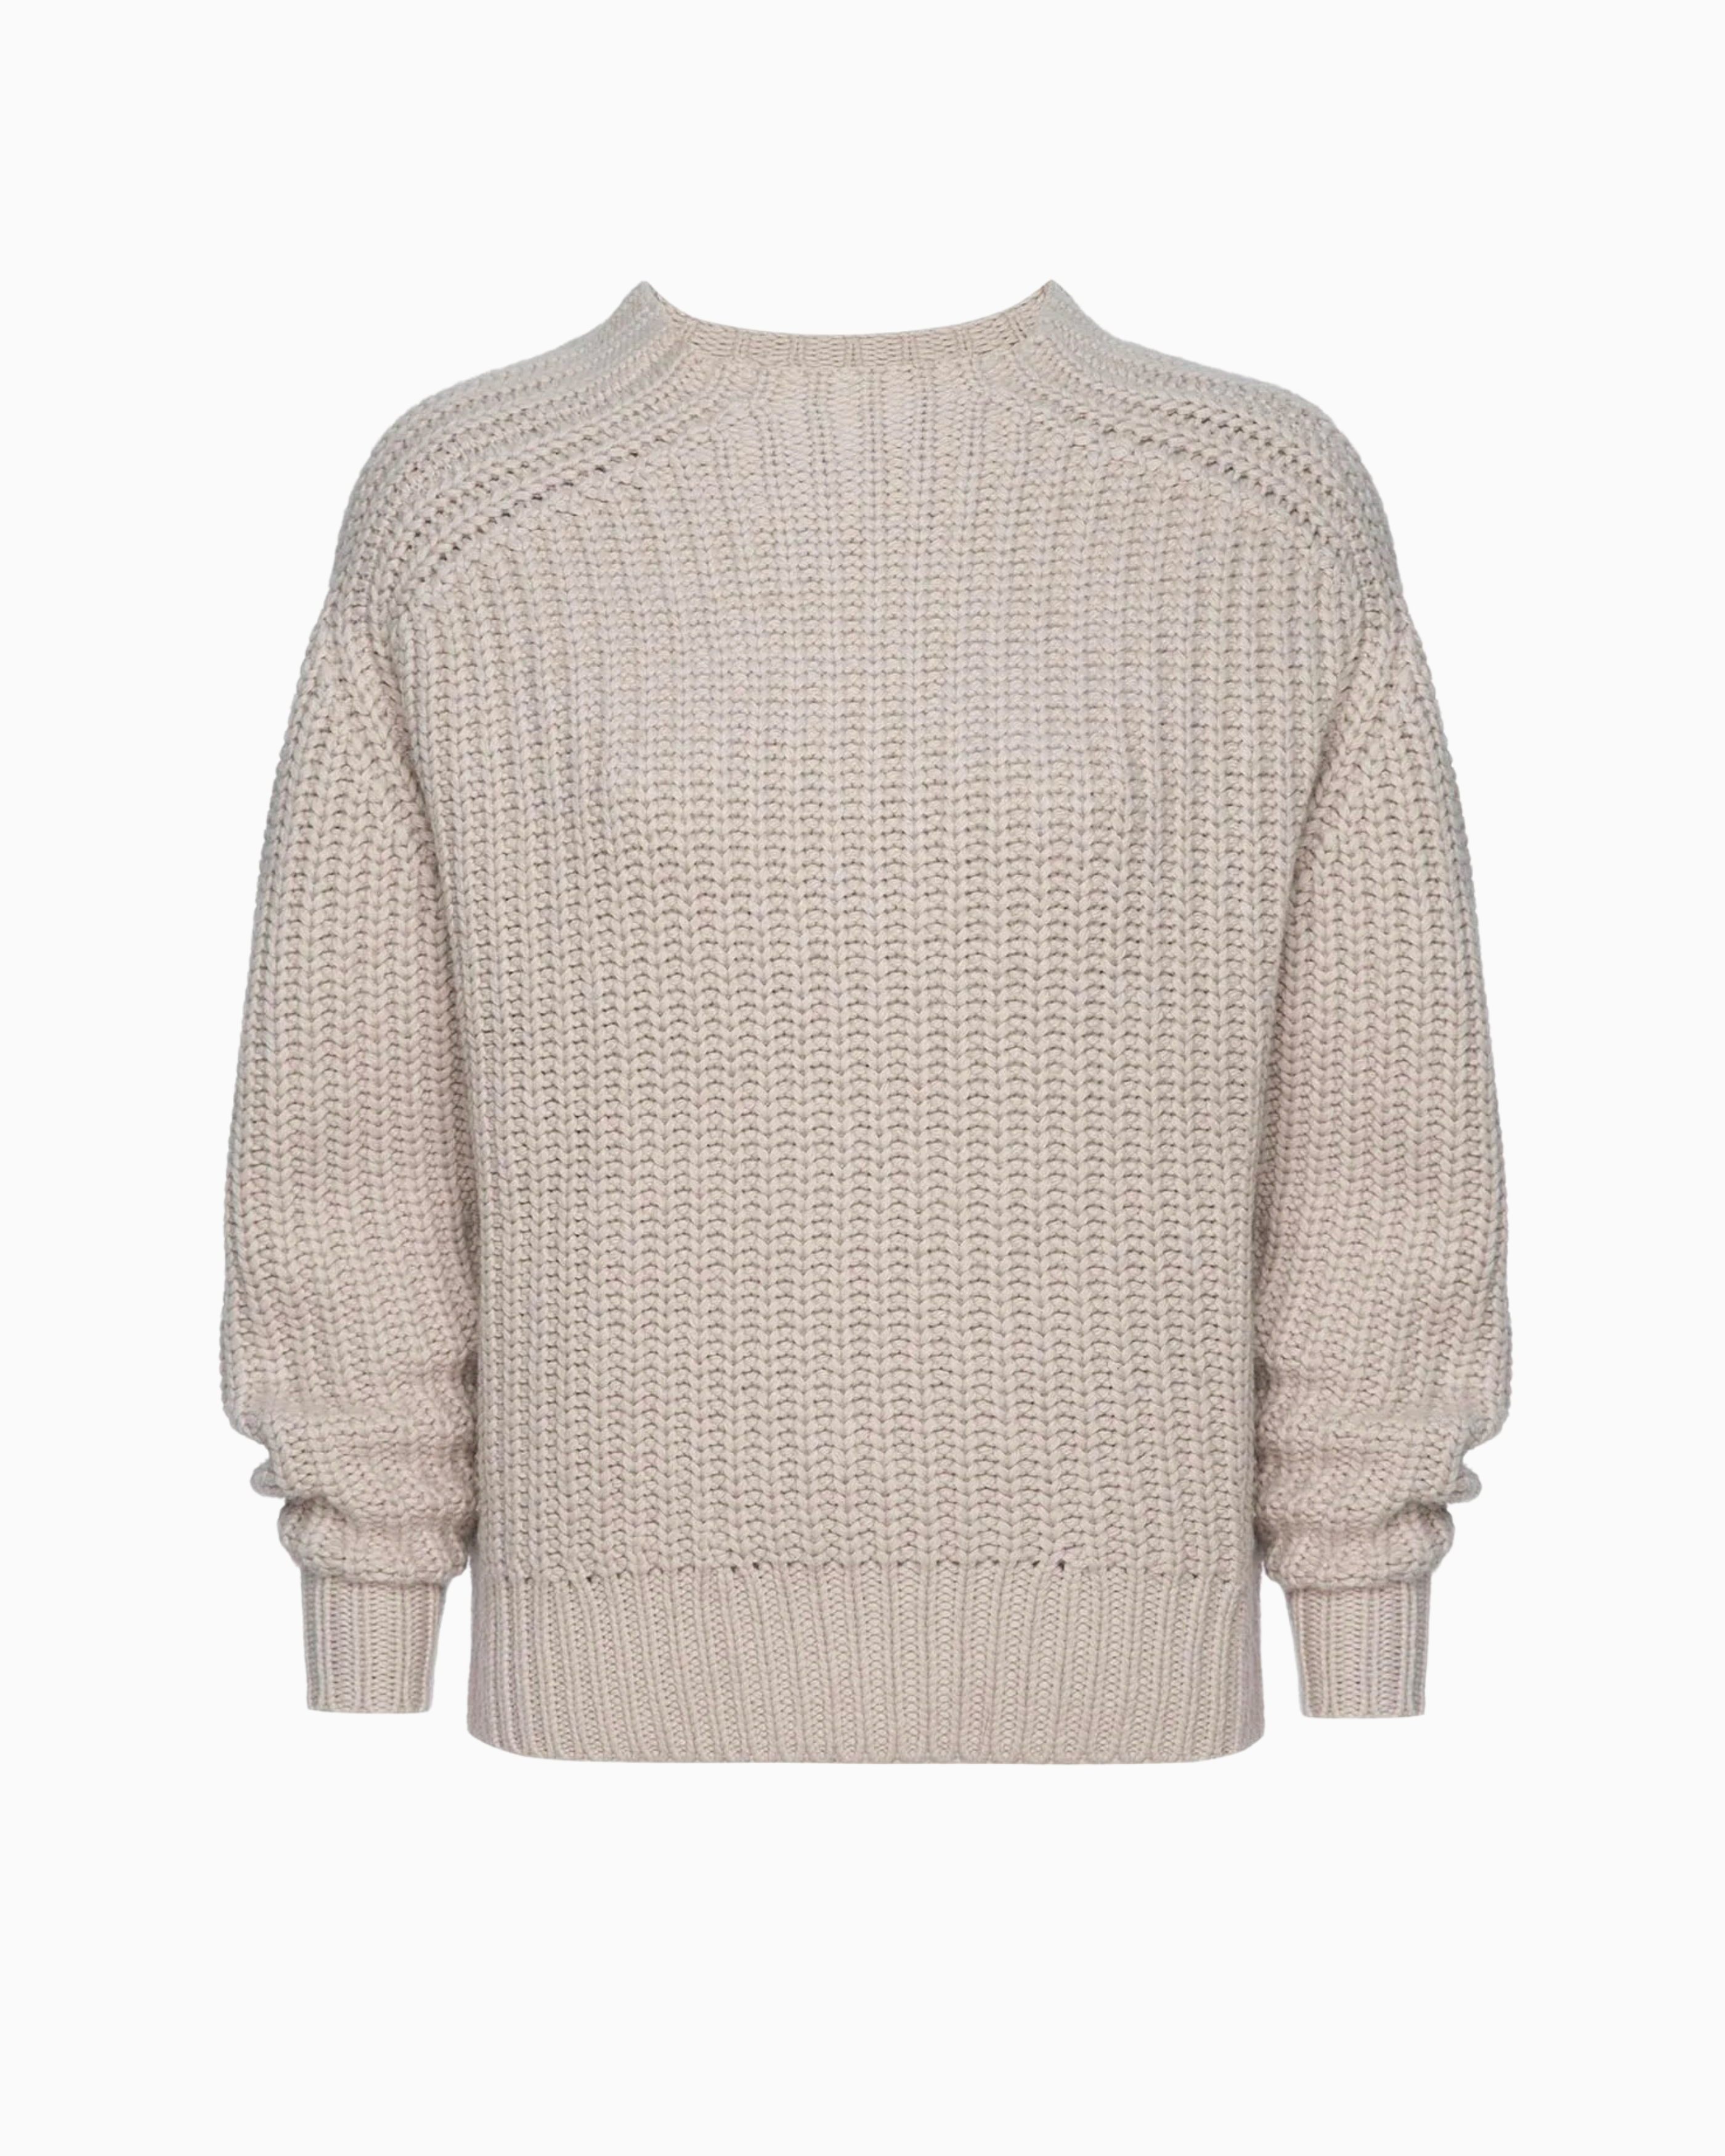 Brochu Walker Beckett Pullover Sweater in Perle